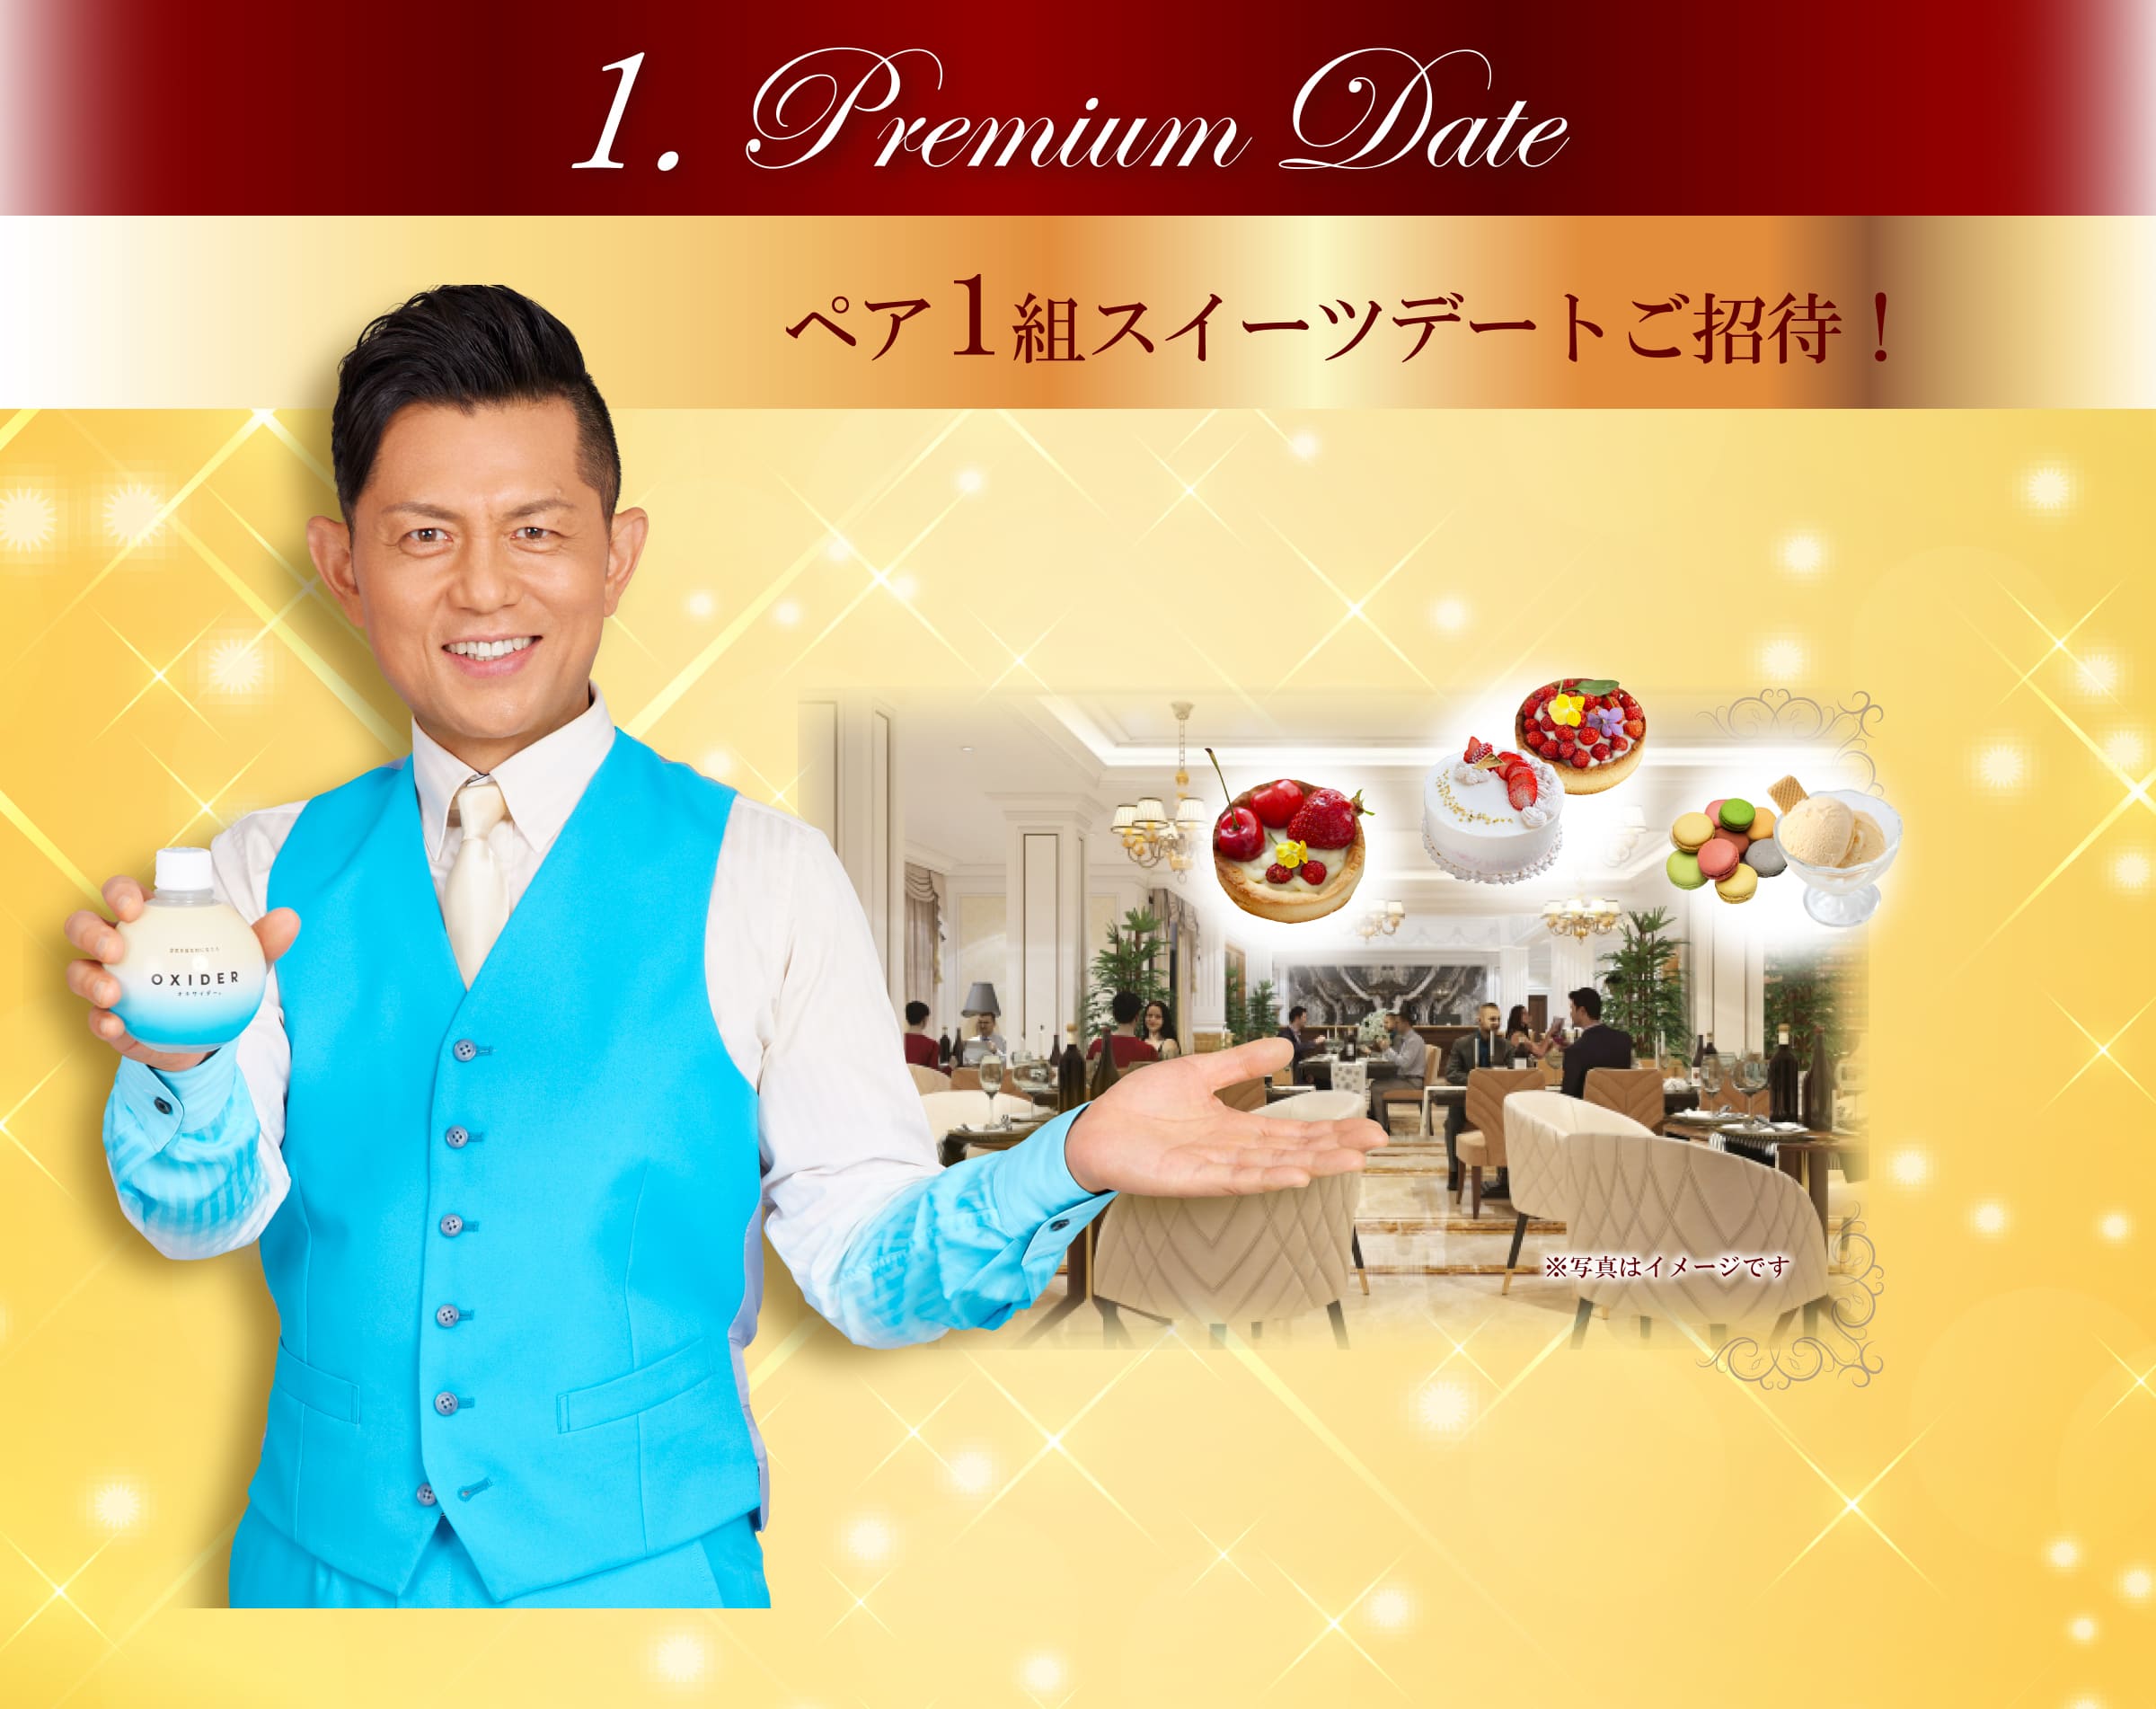 1. Premium Date